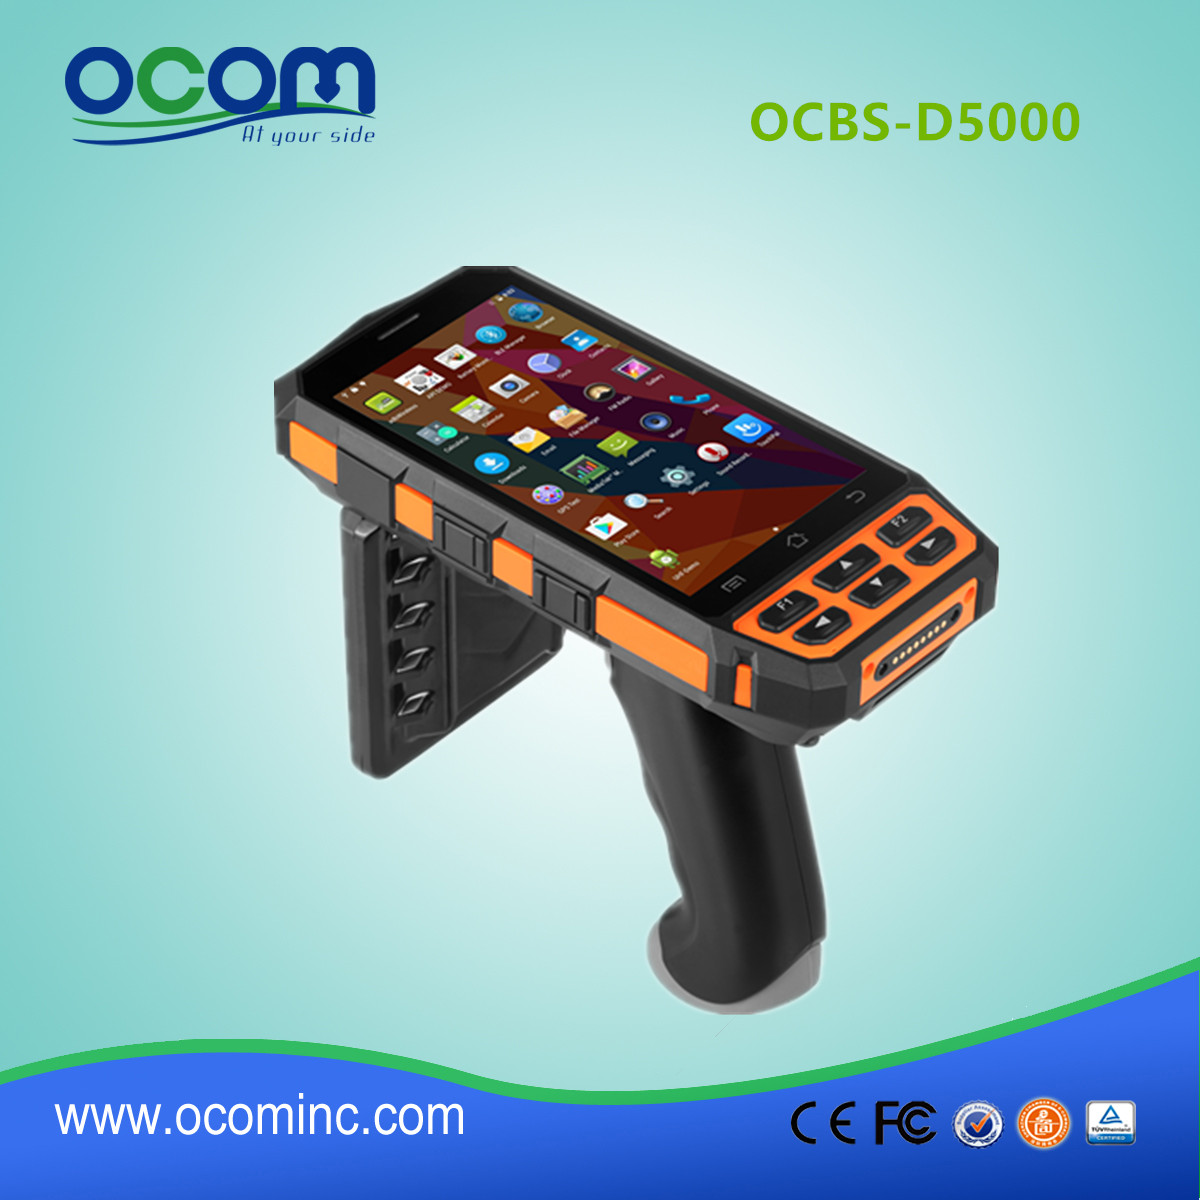 Nowy model przemysłowy ręczny terminal OCBS-D5000 Android